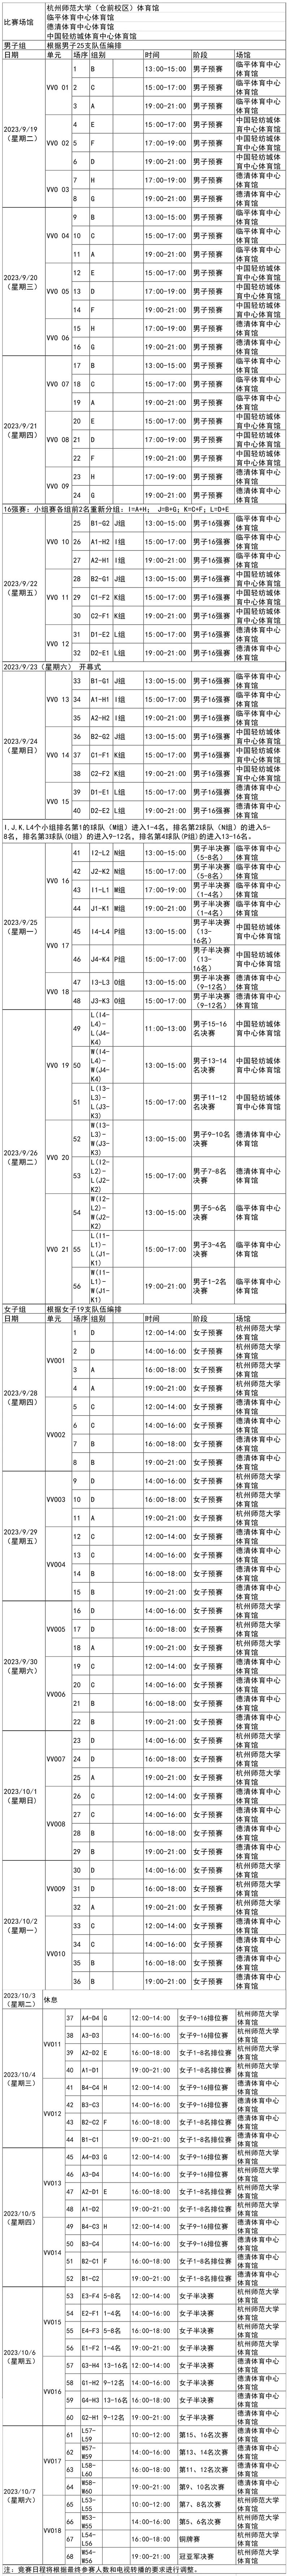 杭州亚运会排球赛程表